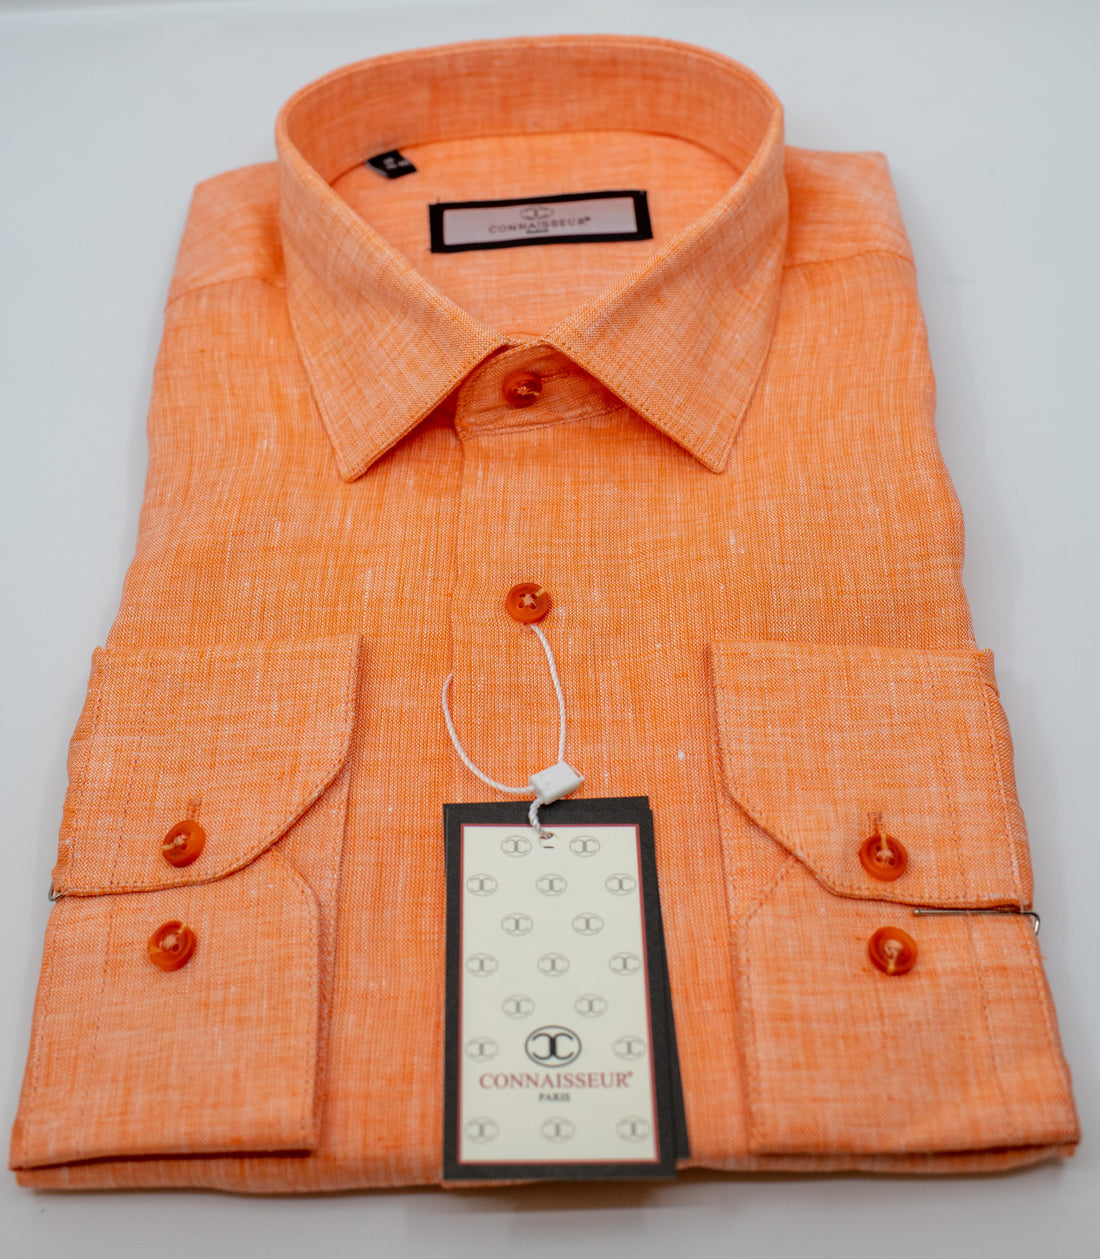 Connaisseur - Orange linen slim fit dress shirt